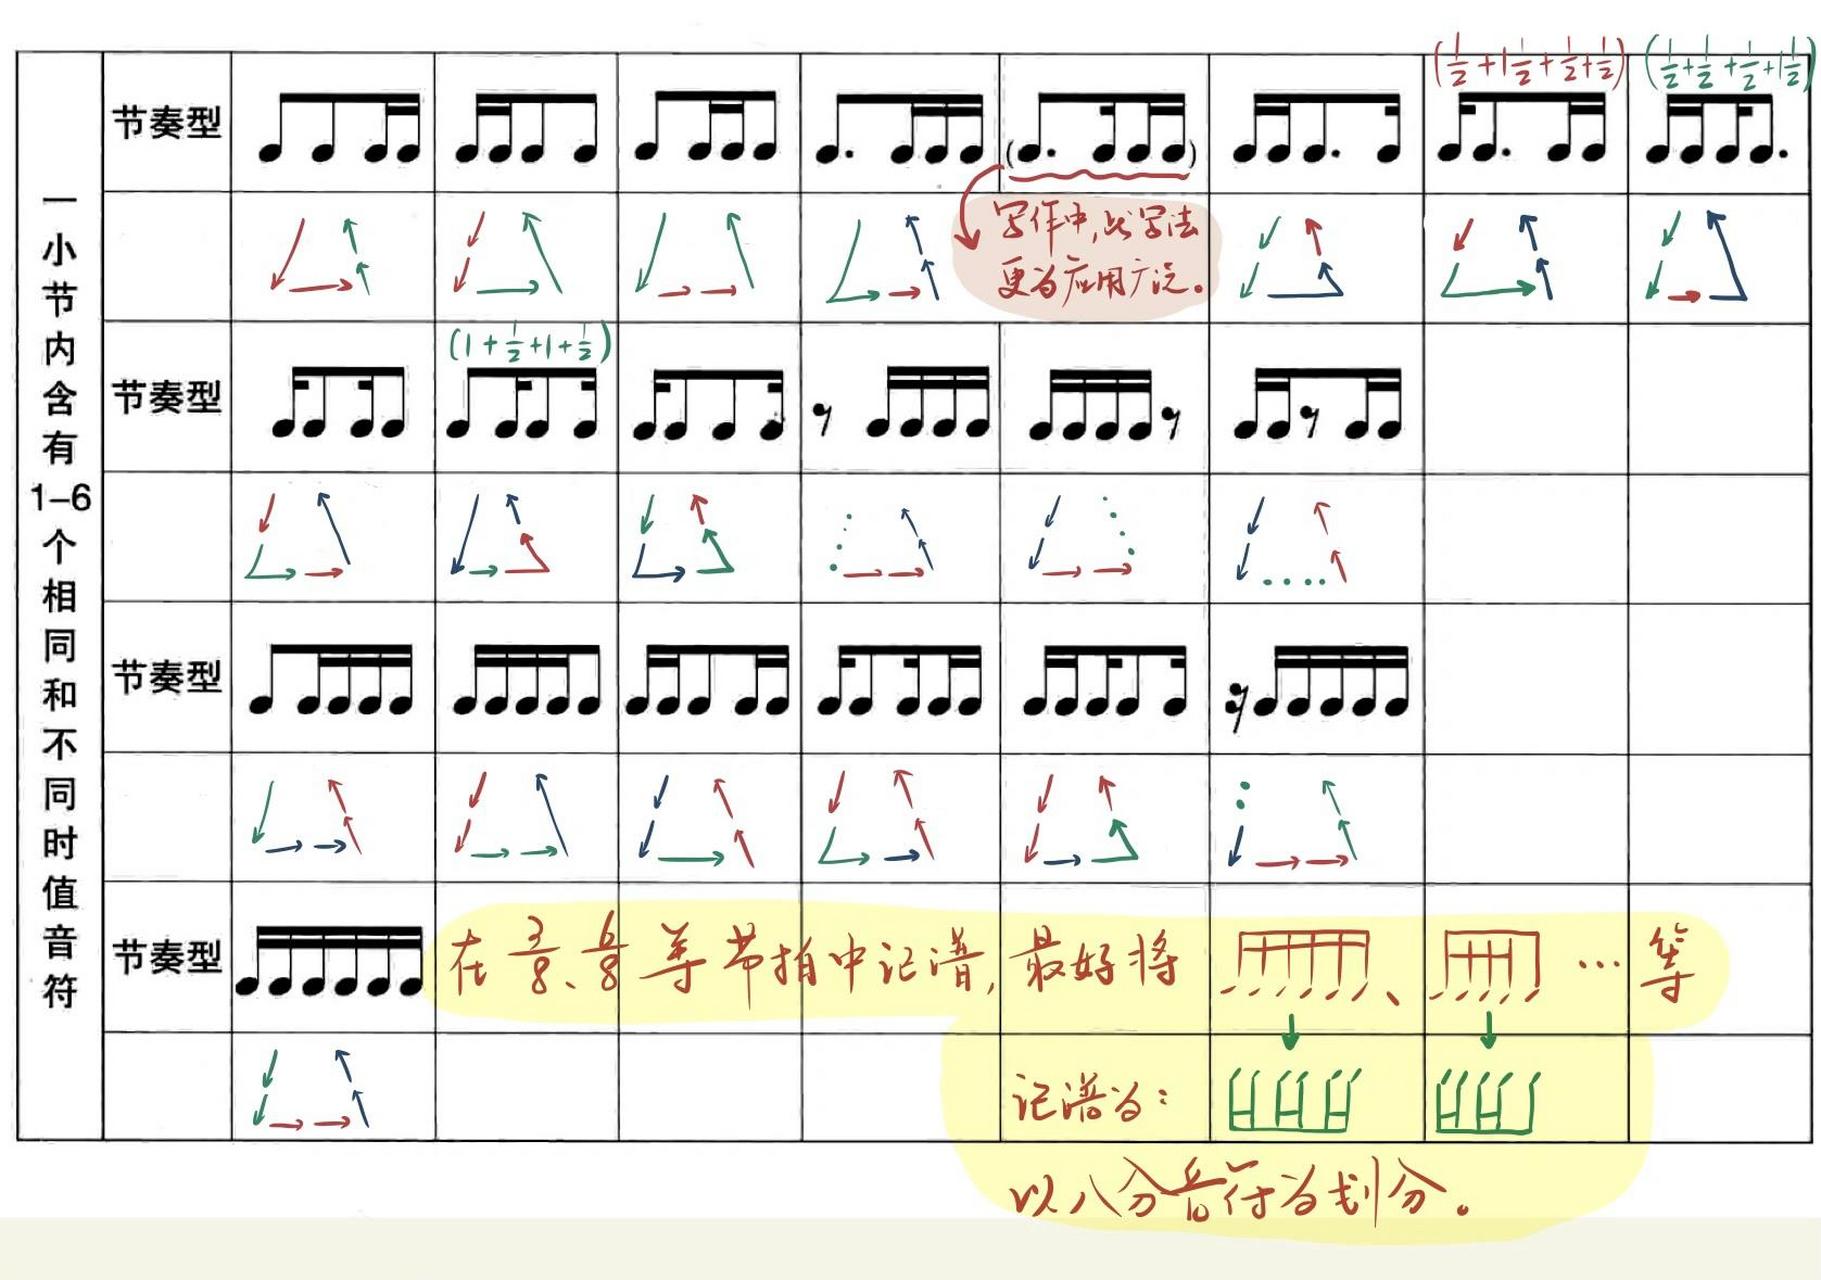 接上一篇笔记,91本篇笔记为大家标注了每种节奏型所占的数值和图示